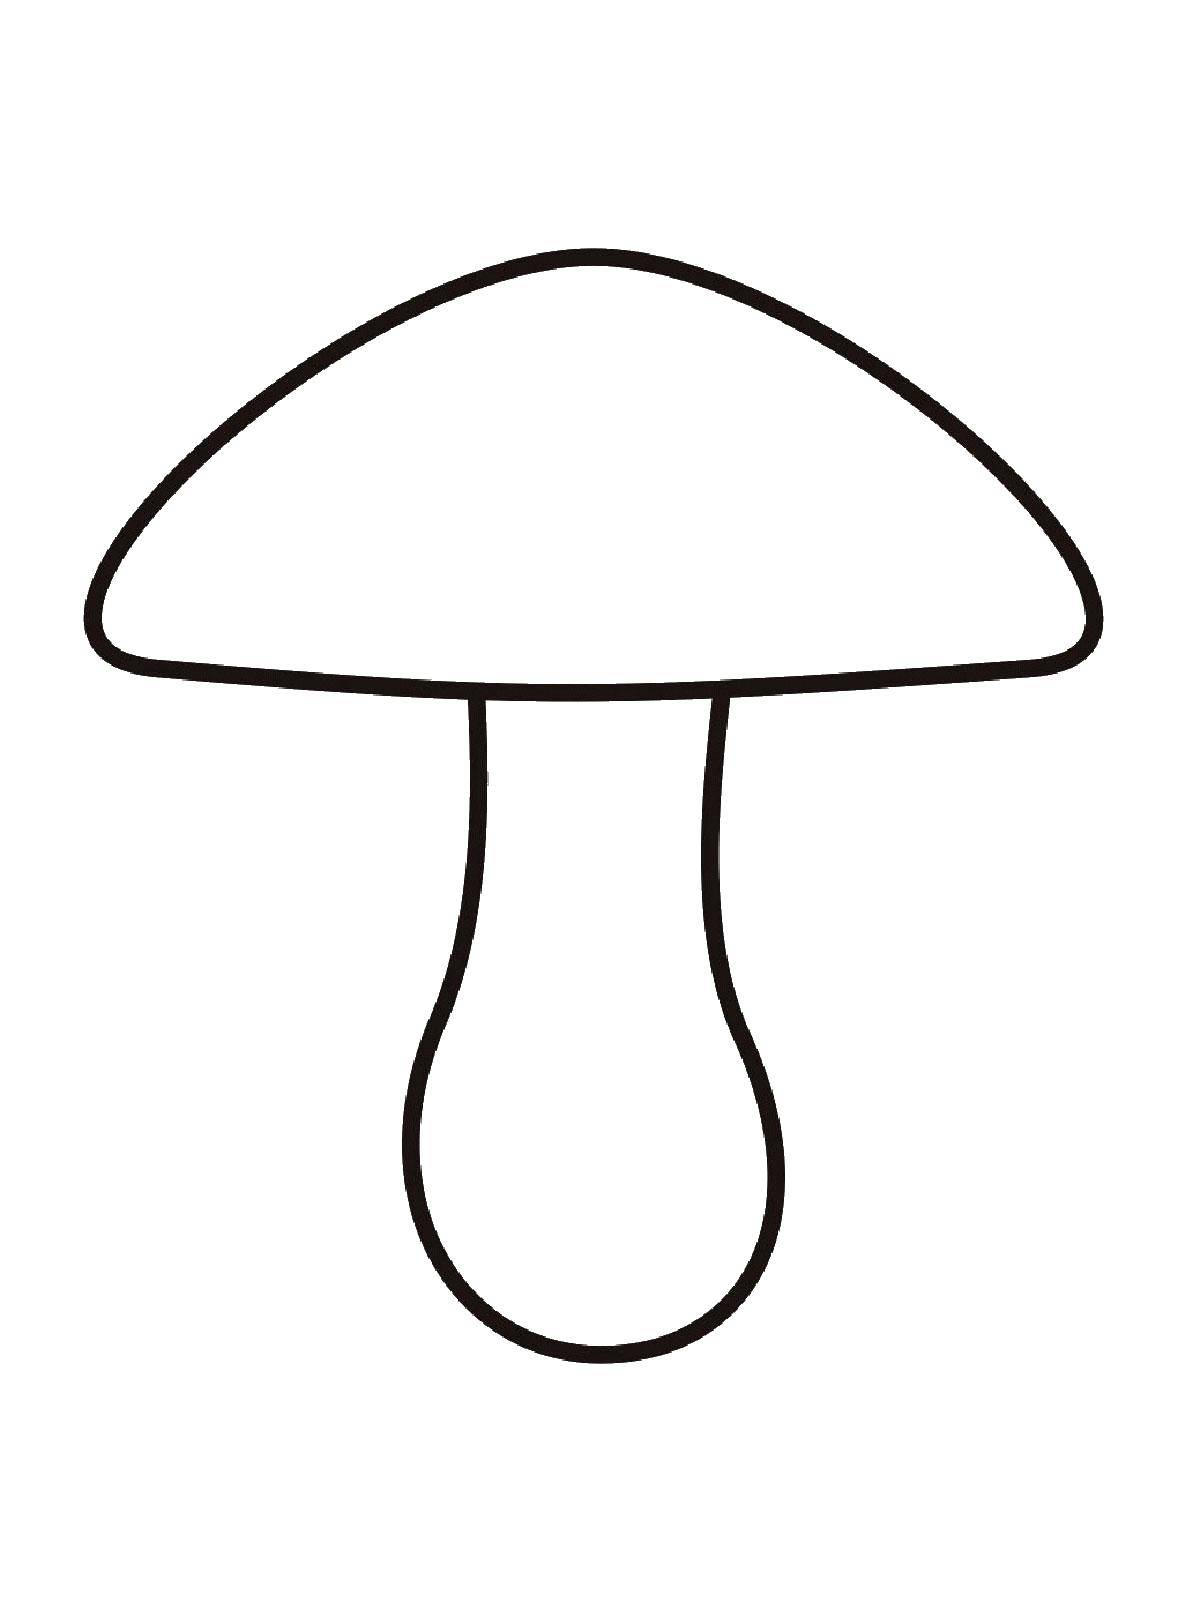 Раскраски с грибами контуры грибов для школьников  Гриб